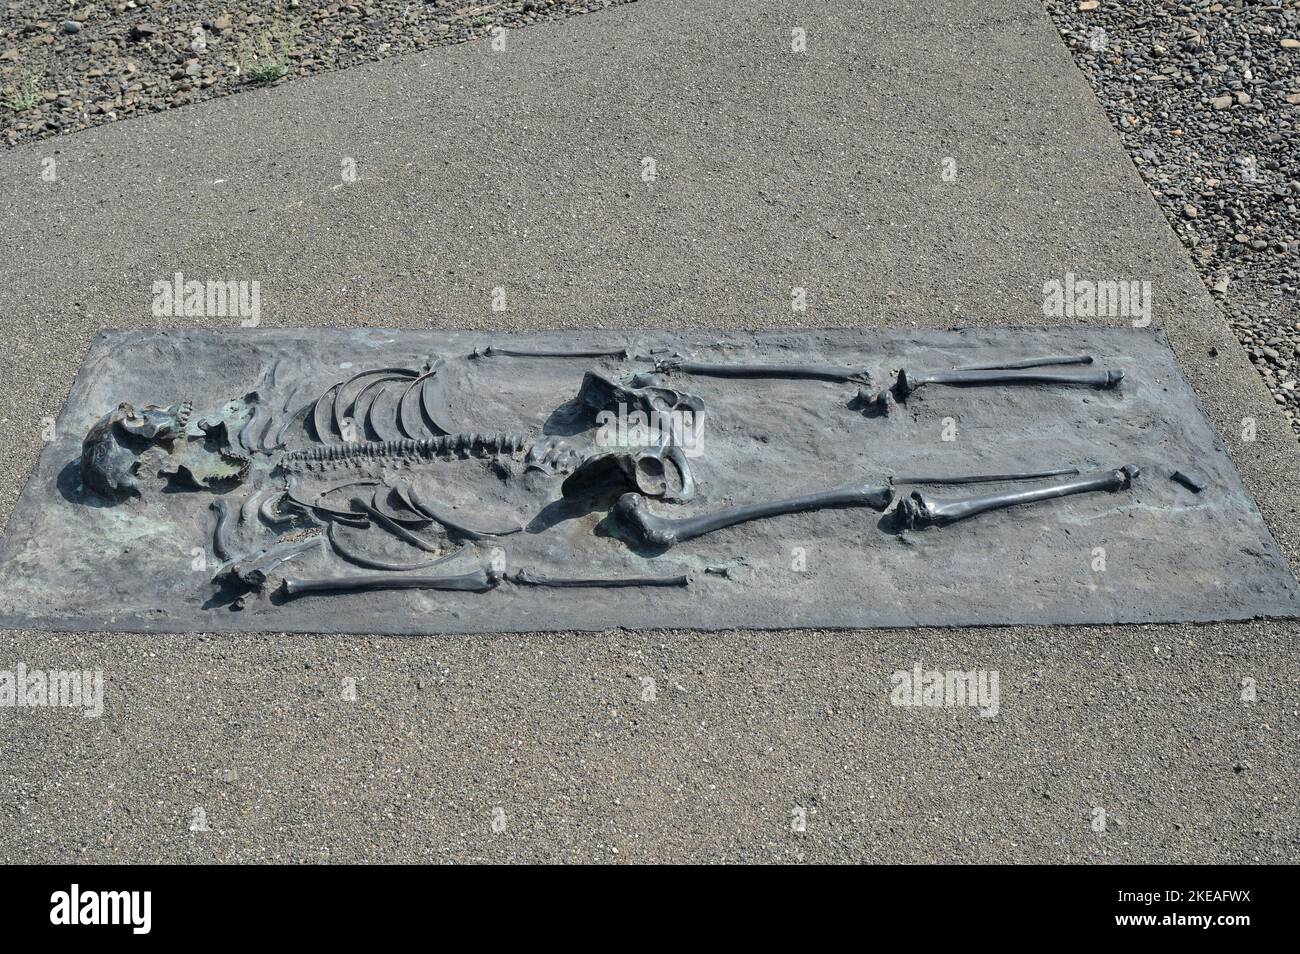 KENYA, Turkana, aldea Nariokotome, sitio de excavación de Turkana Boy, también llamado Nariokotome Boy, es el nombre dado al fósil KNM-WT 15000, un esqueleto casi completo de un joven homo ergaster que vivió hace 1,5 a 1,6 millones de años. Fue descubierto en 1984 por Kamoya Kimeu en la orilla del río Nariokotome, cerca del lago Turkana en Kenia, réplica de bronce / KENIA, Turkana, Dorf Nariokotome, Ausgrabungsstätte und Fundort des 'Turkana Boy', ein 1,6 Milliichonen Jahre altes menschliches Skelett, Nariokotome-as ezeines Männlichen, fósiles Jugendlichen Individuums der Gattung Homo Ergas Foto de stock